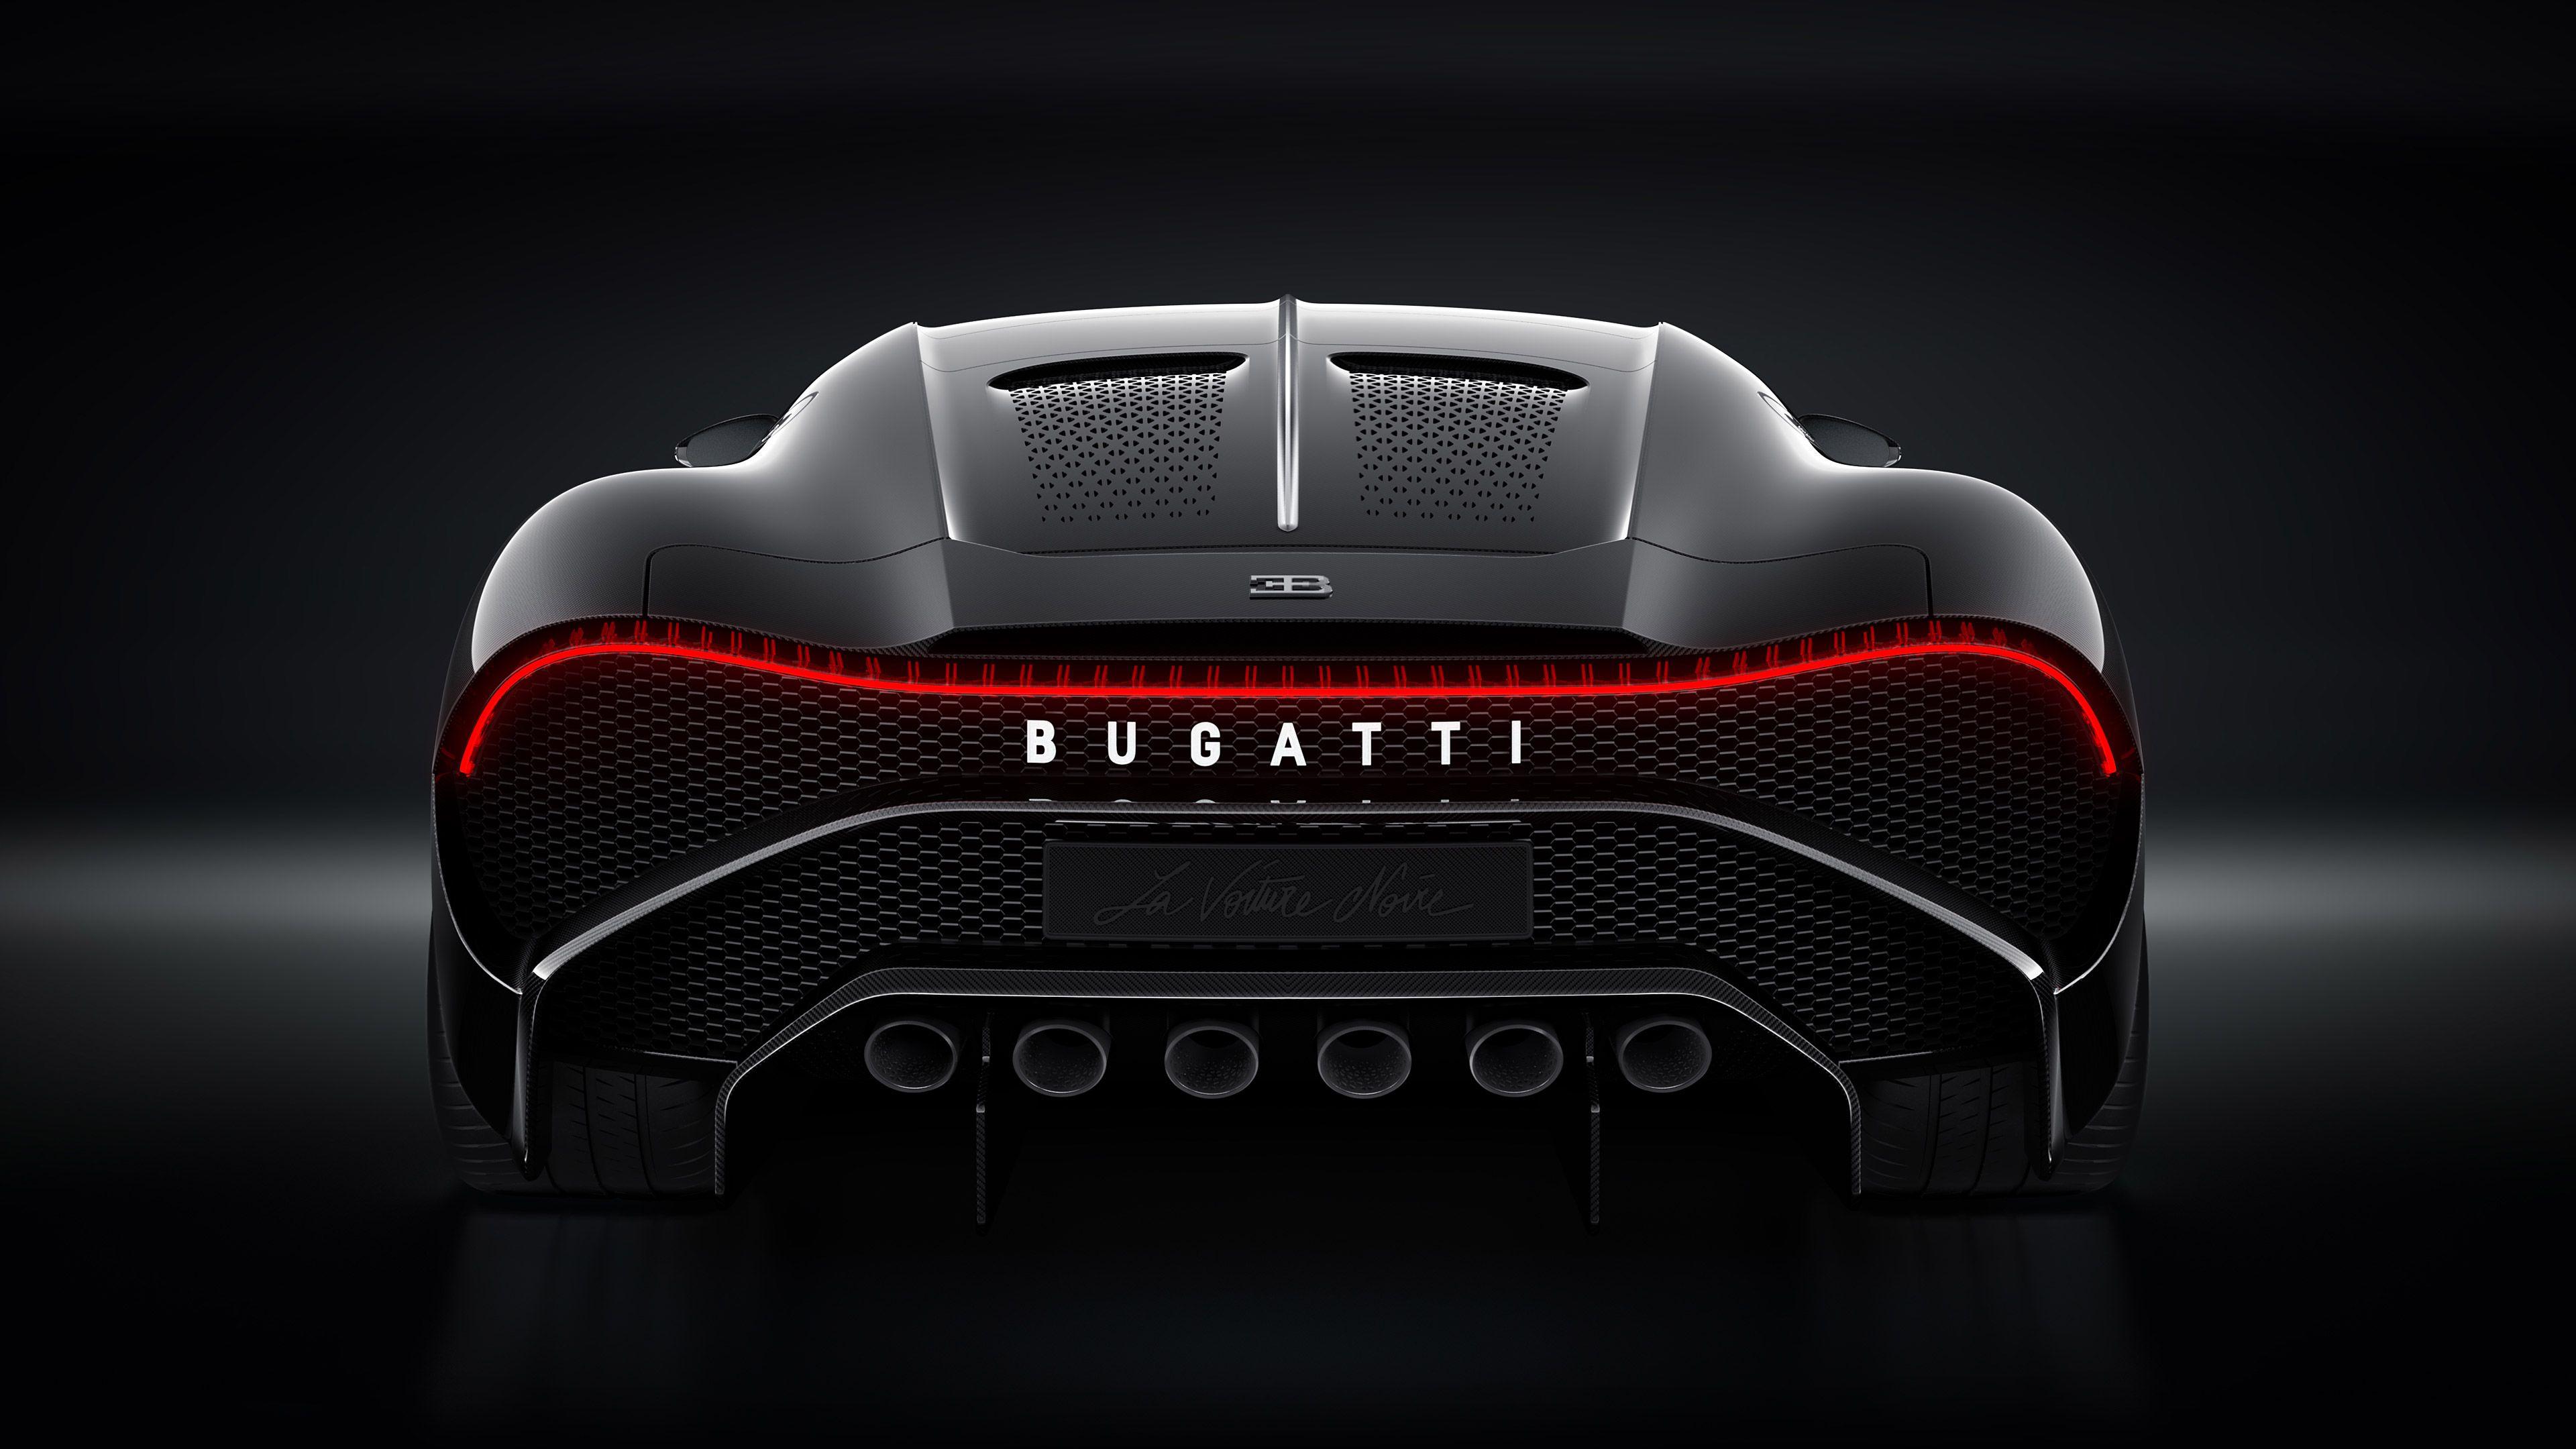 Bugatti La Voiture Noire Rear 2019 bugatti wallpaper 4k, Bugatti